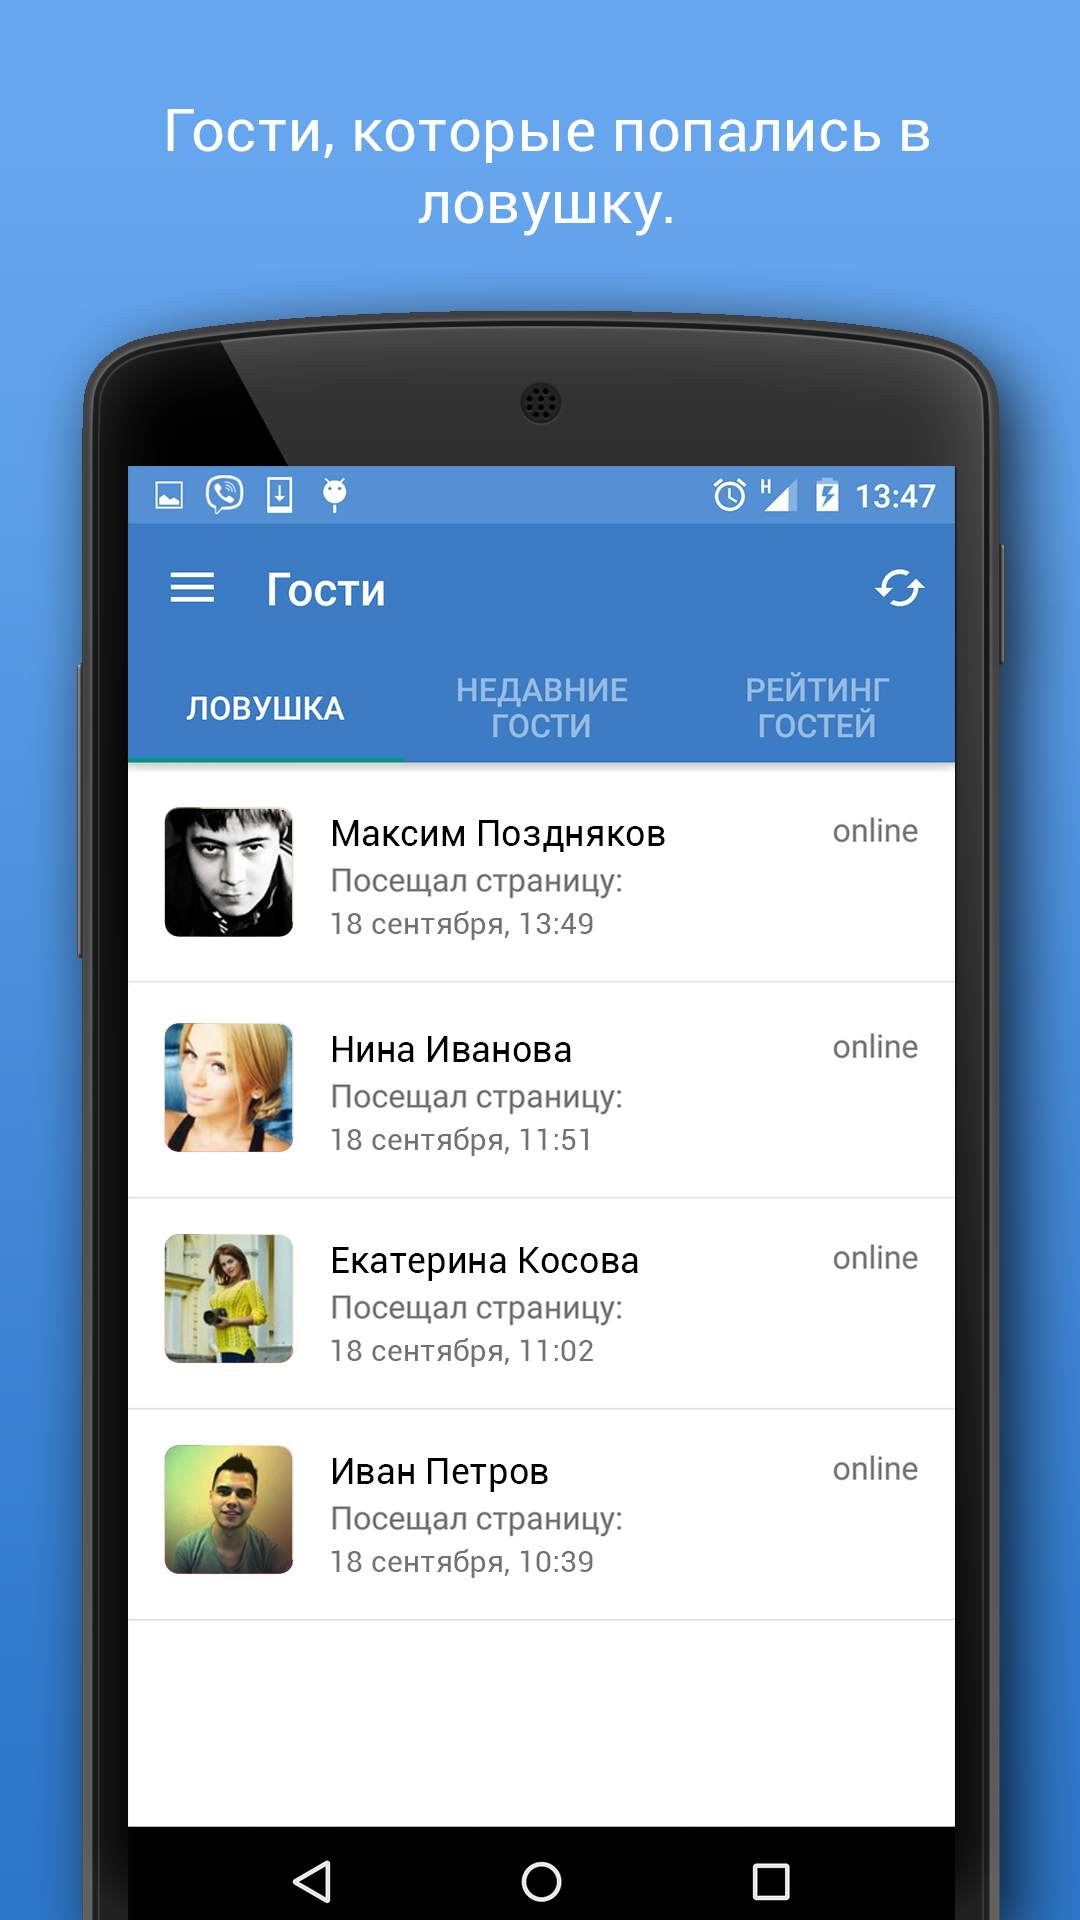 Android application Гости для ВК (Вконтакте) PRO screenshort